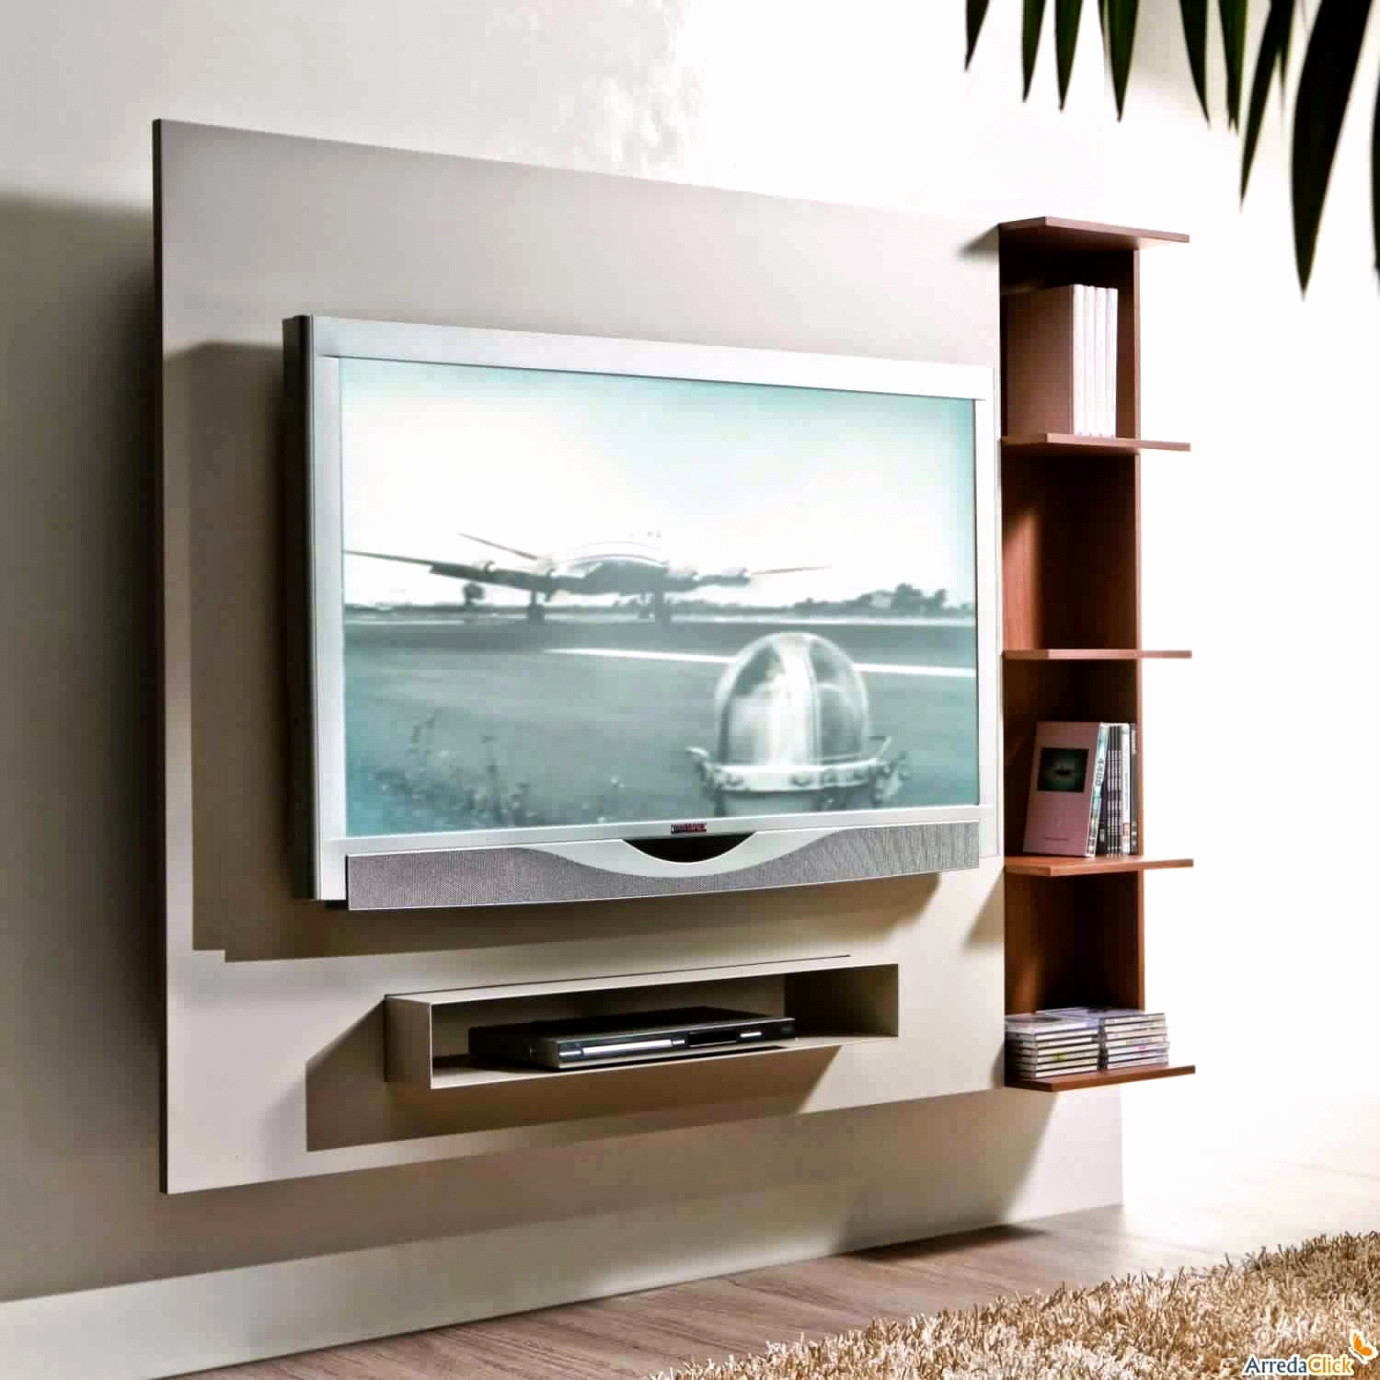 meuble bois design meuble de tv design cool as interior design awesome meuble design 0d of meuble bois design